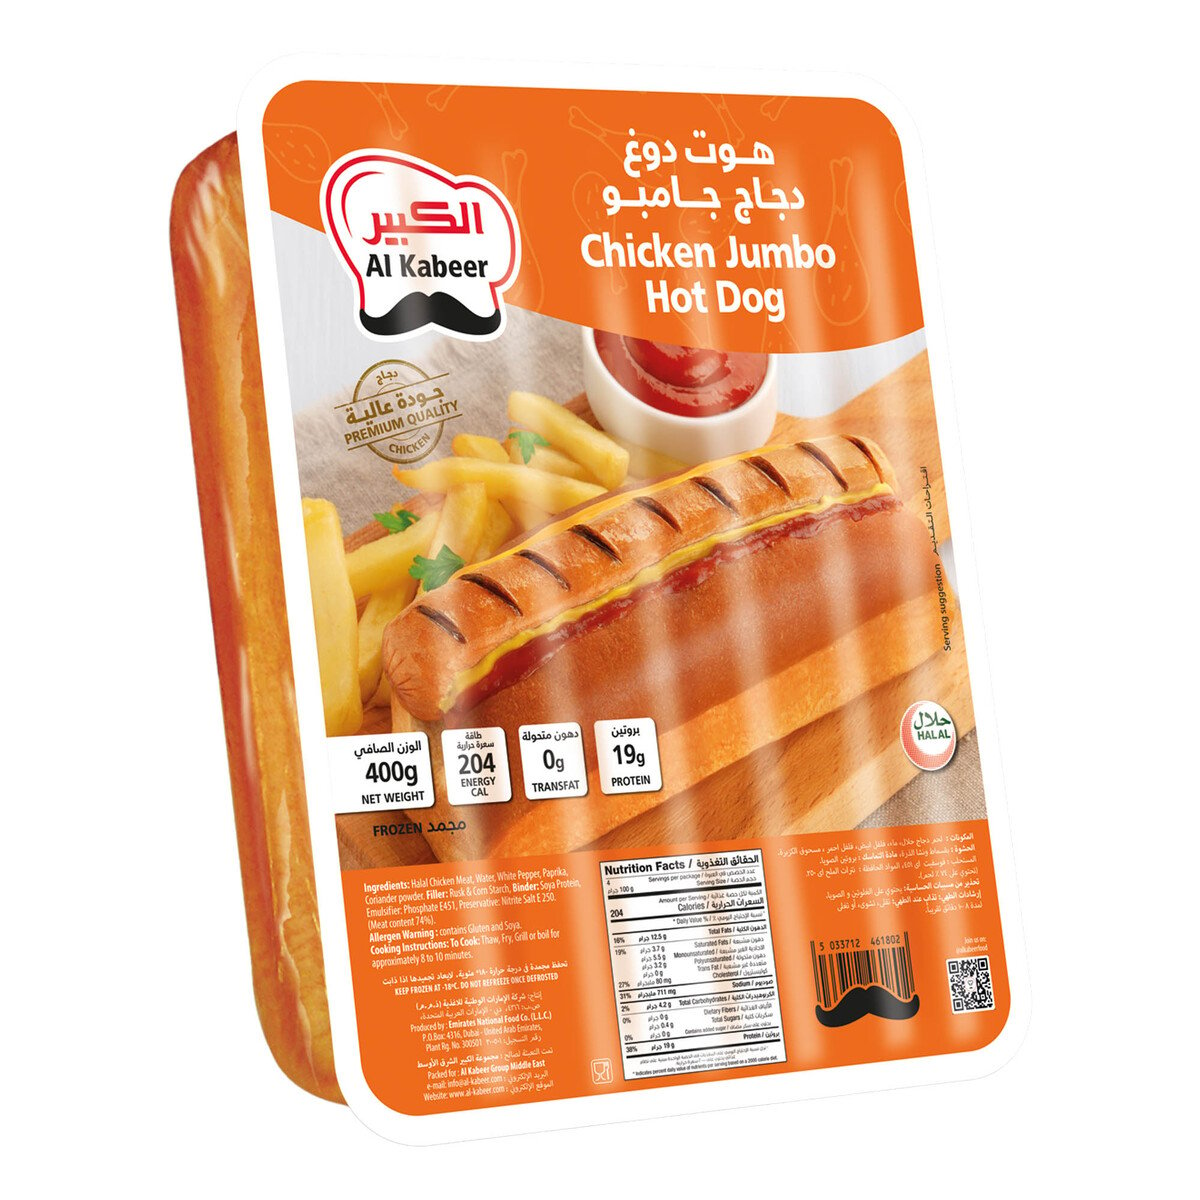 اشتري قم بشراء الكبير هوت دوغ دجاج جامبو 400 جم Online at Best Price من الموقع - من لولو هايبر ماركت Frozen Sausages في الامارات